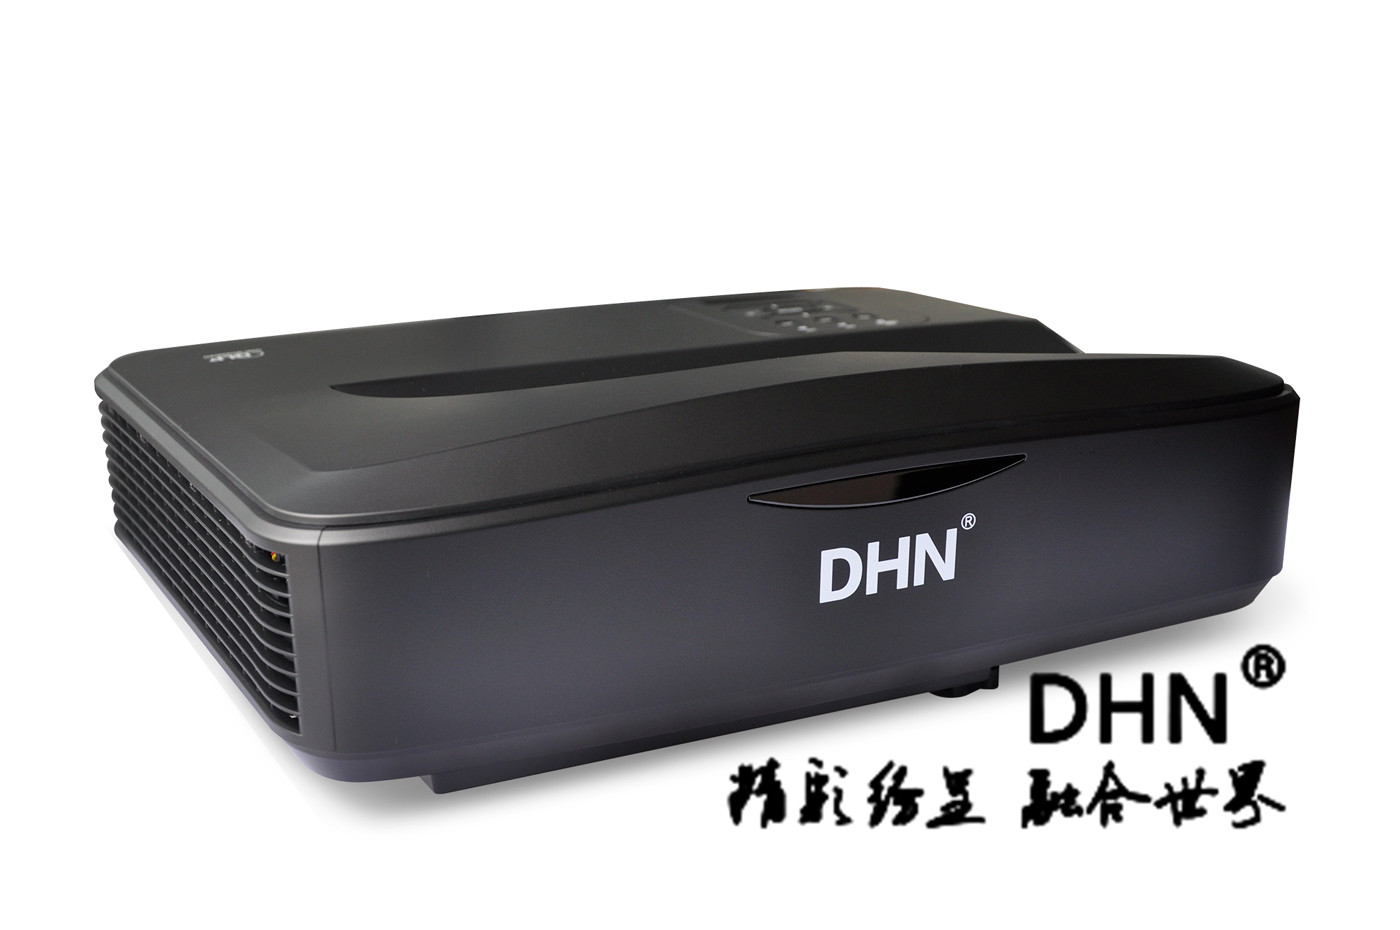 DM907超短焦激光投影机